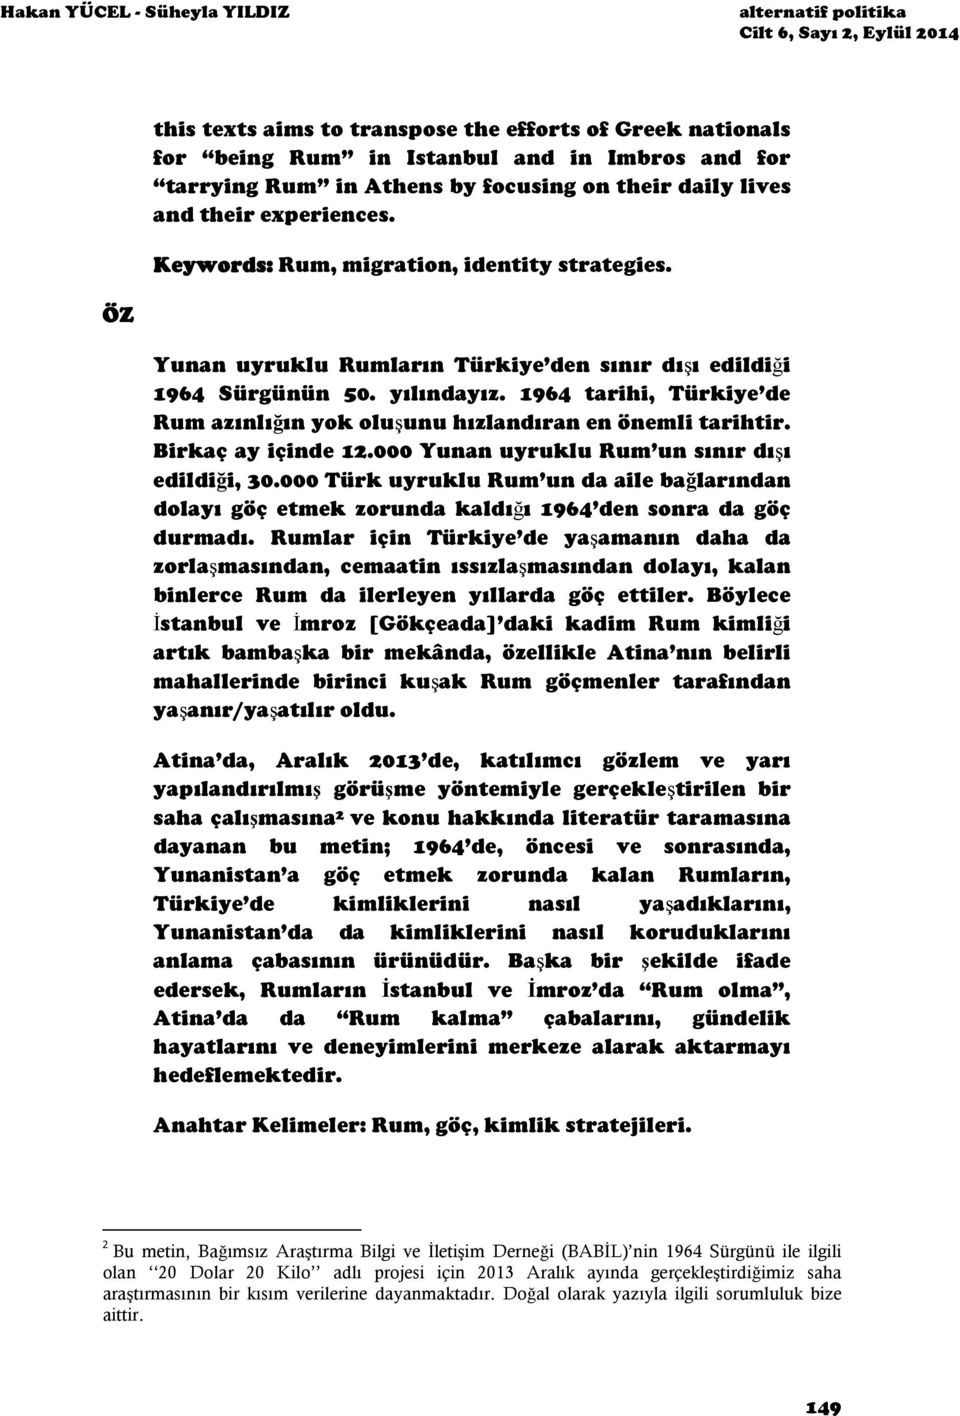 yılındayız. 1964 tarihi, Türkiye de Rum azınlığın yok oluşunu hızlandıran en önemli tarihtir. Birkaç ay içinde 12.000 Yunan uyruklu Rum un sınır dışı edildiği, 30.